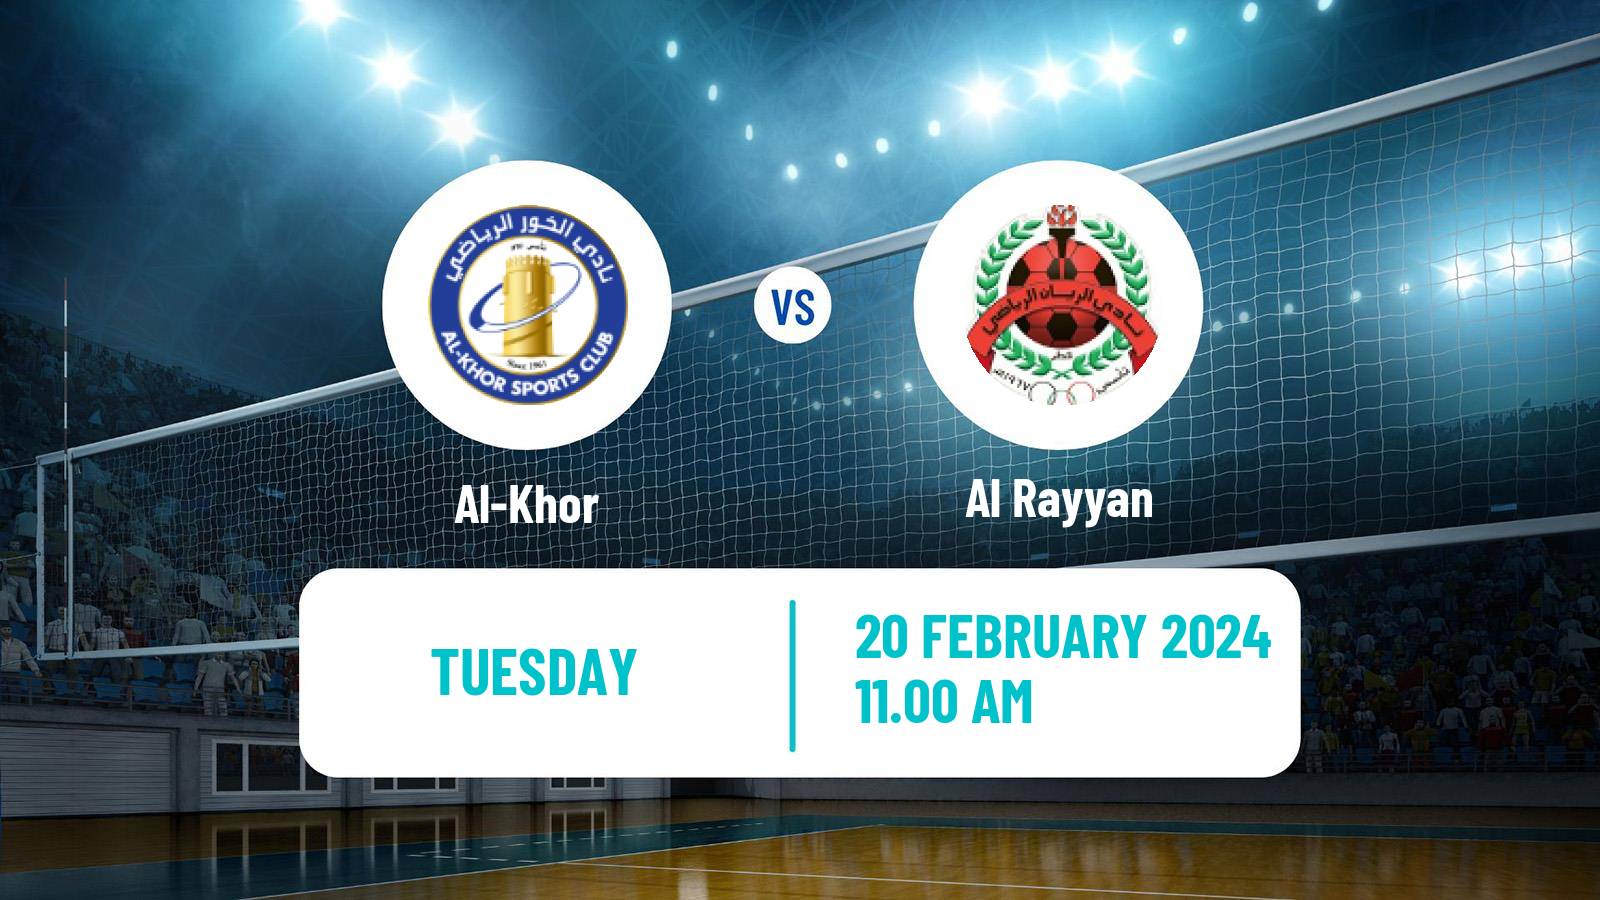 Volleyball Qatar Volleyball League Al-Khor - Al Rayyan